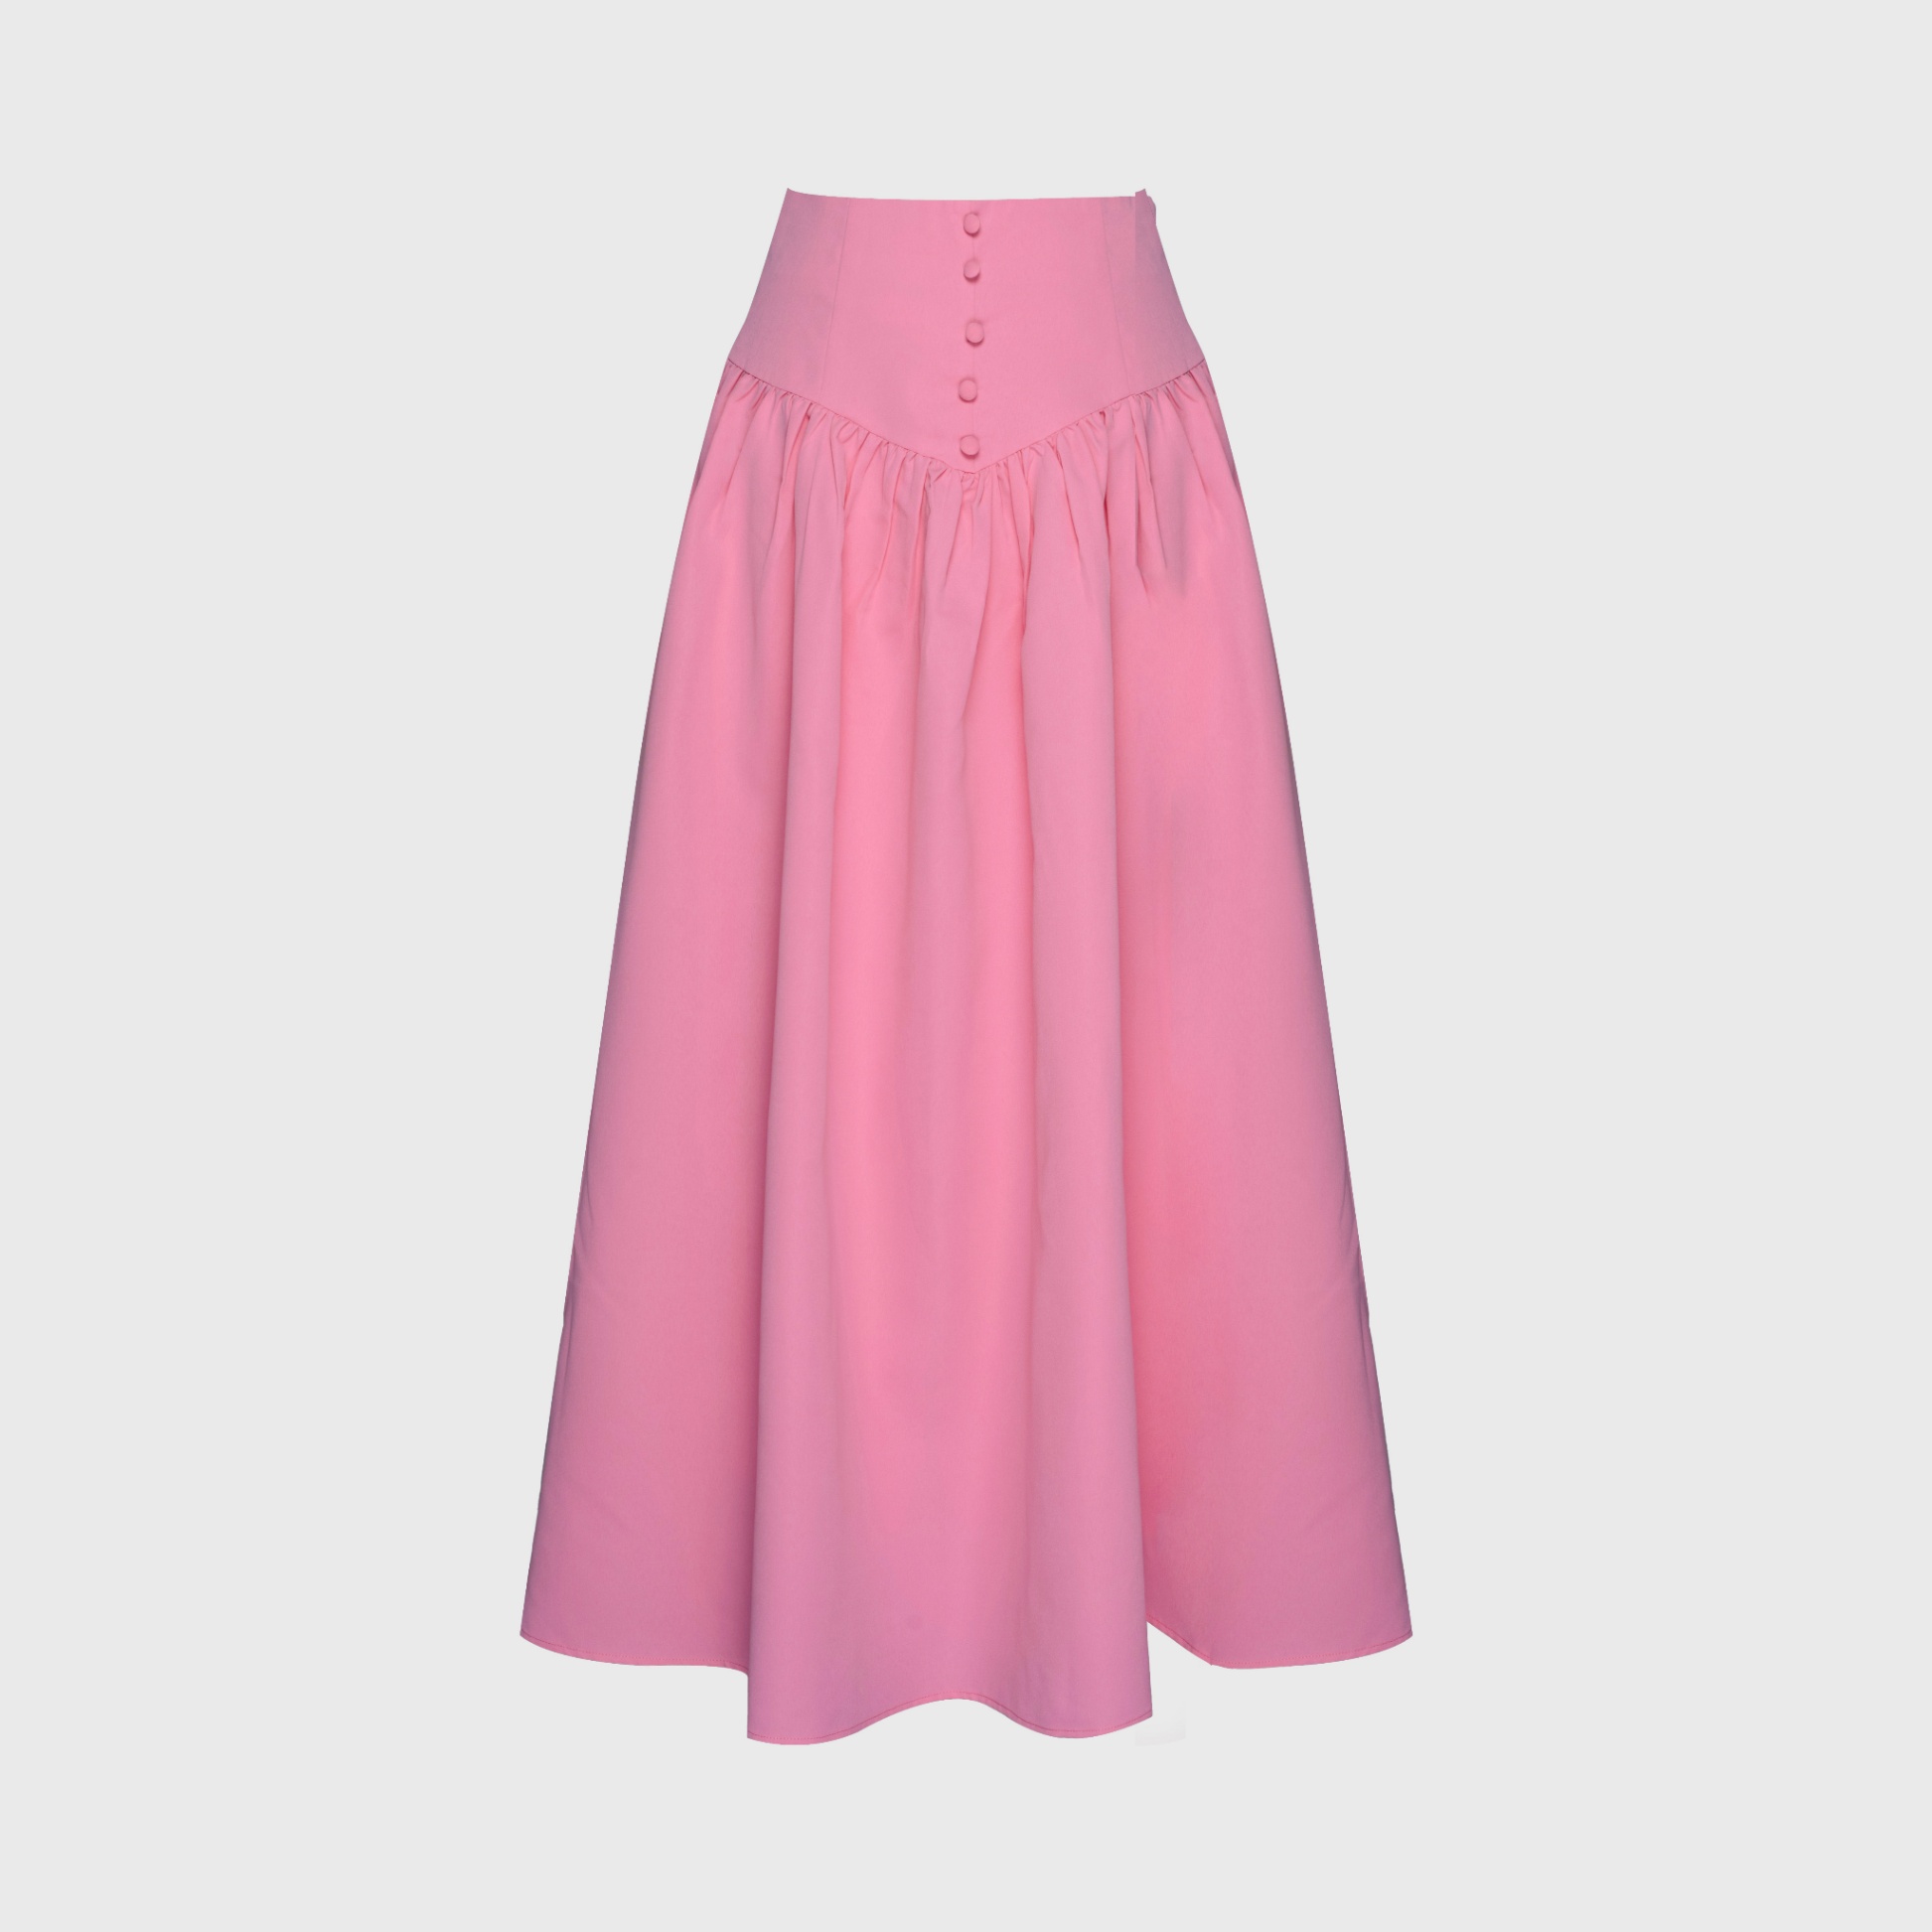 Chân váy hồng phối với áo màu gì vừa đẹp vừa hợp thời trang?